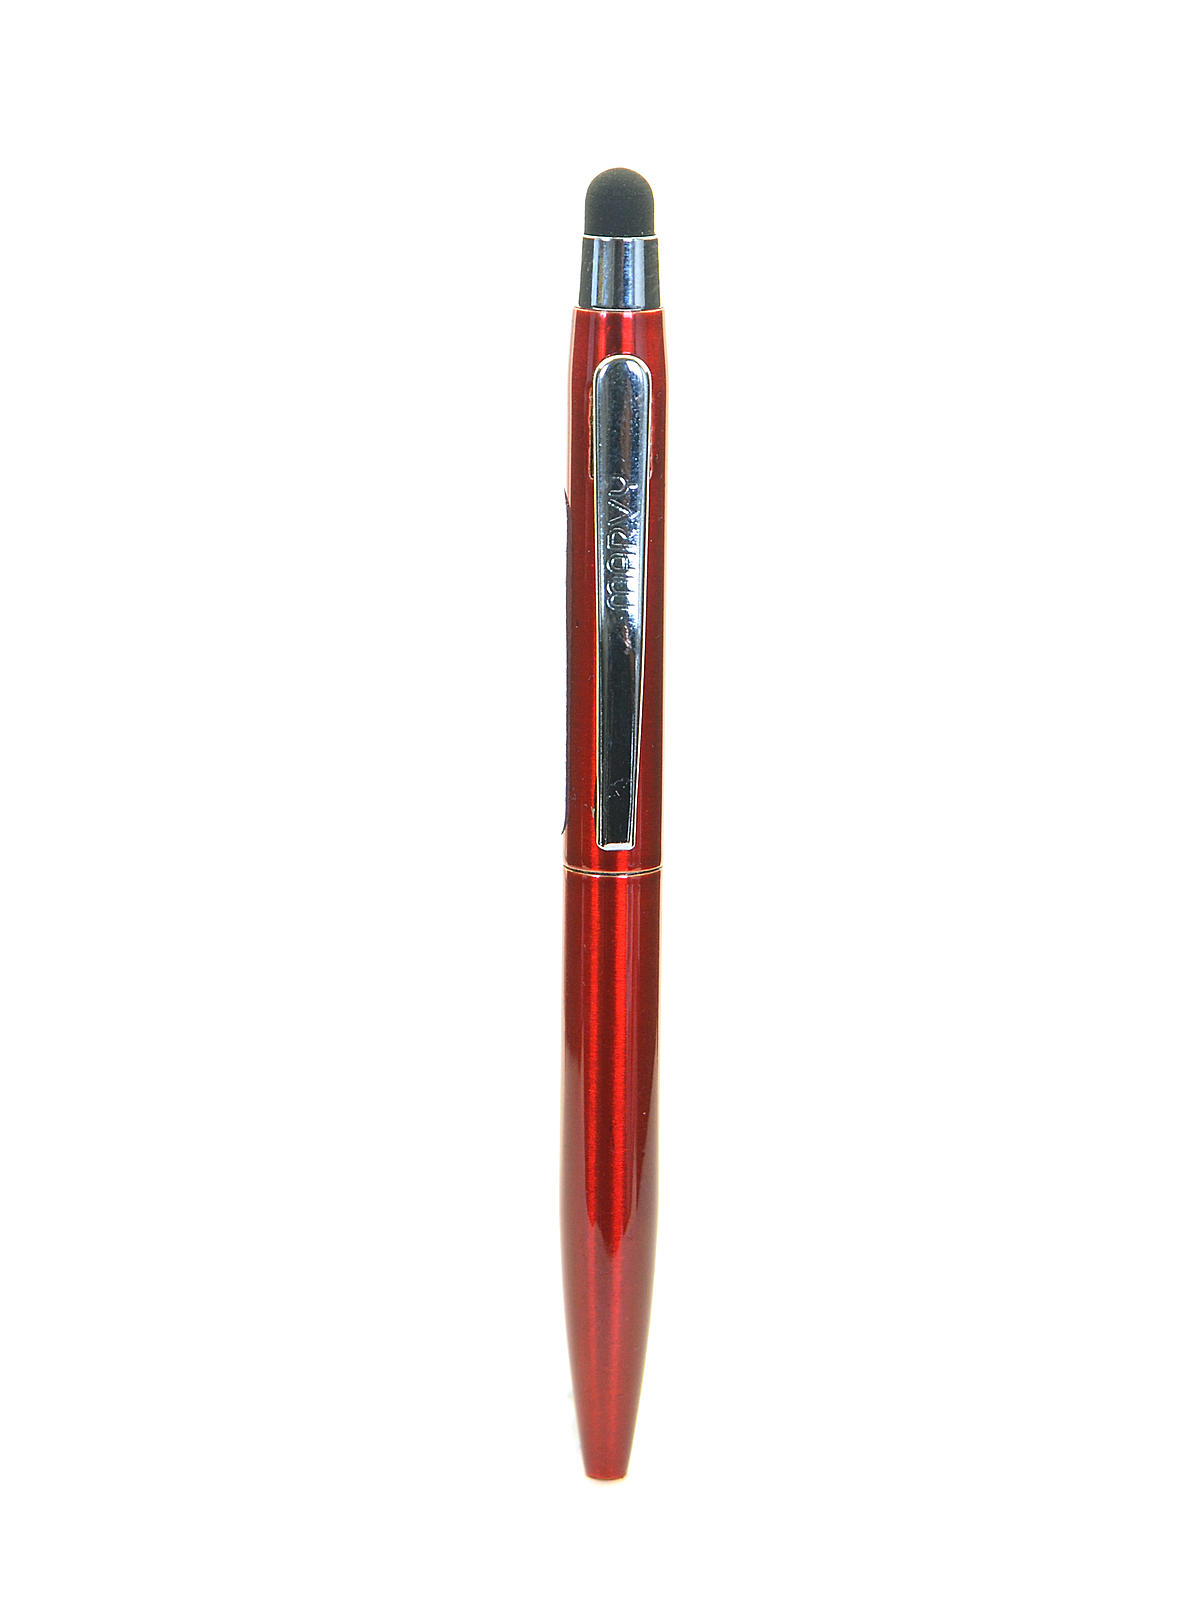 St. Tropez Petite 2 In 1 Stylus & Pen Red